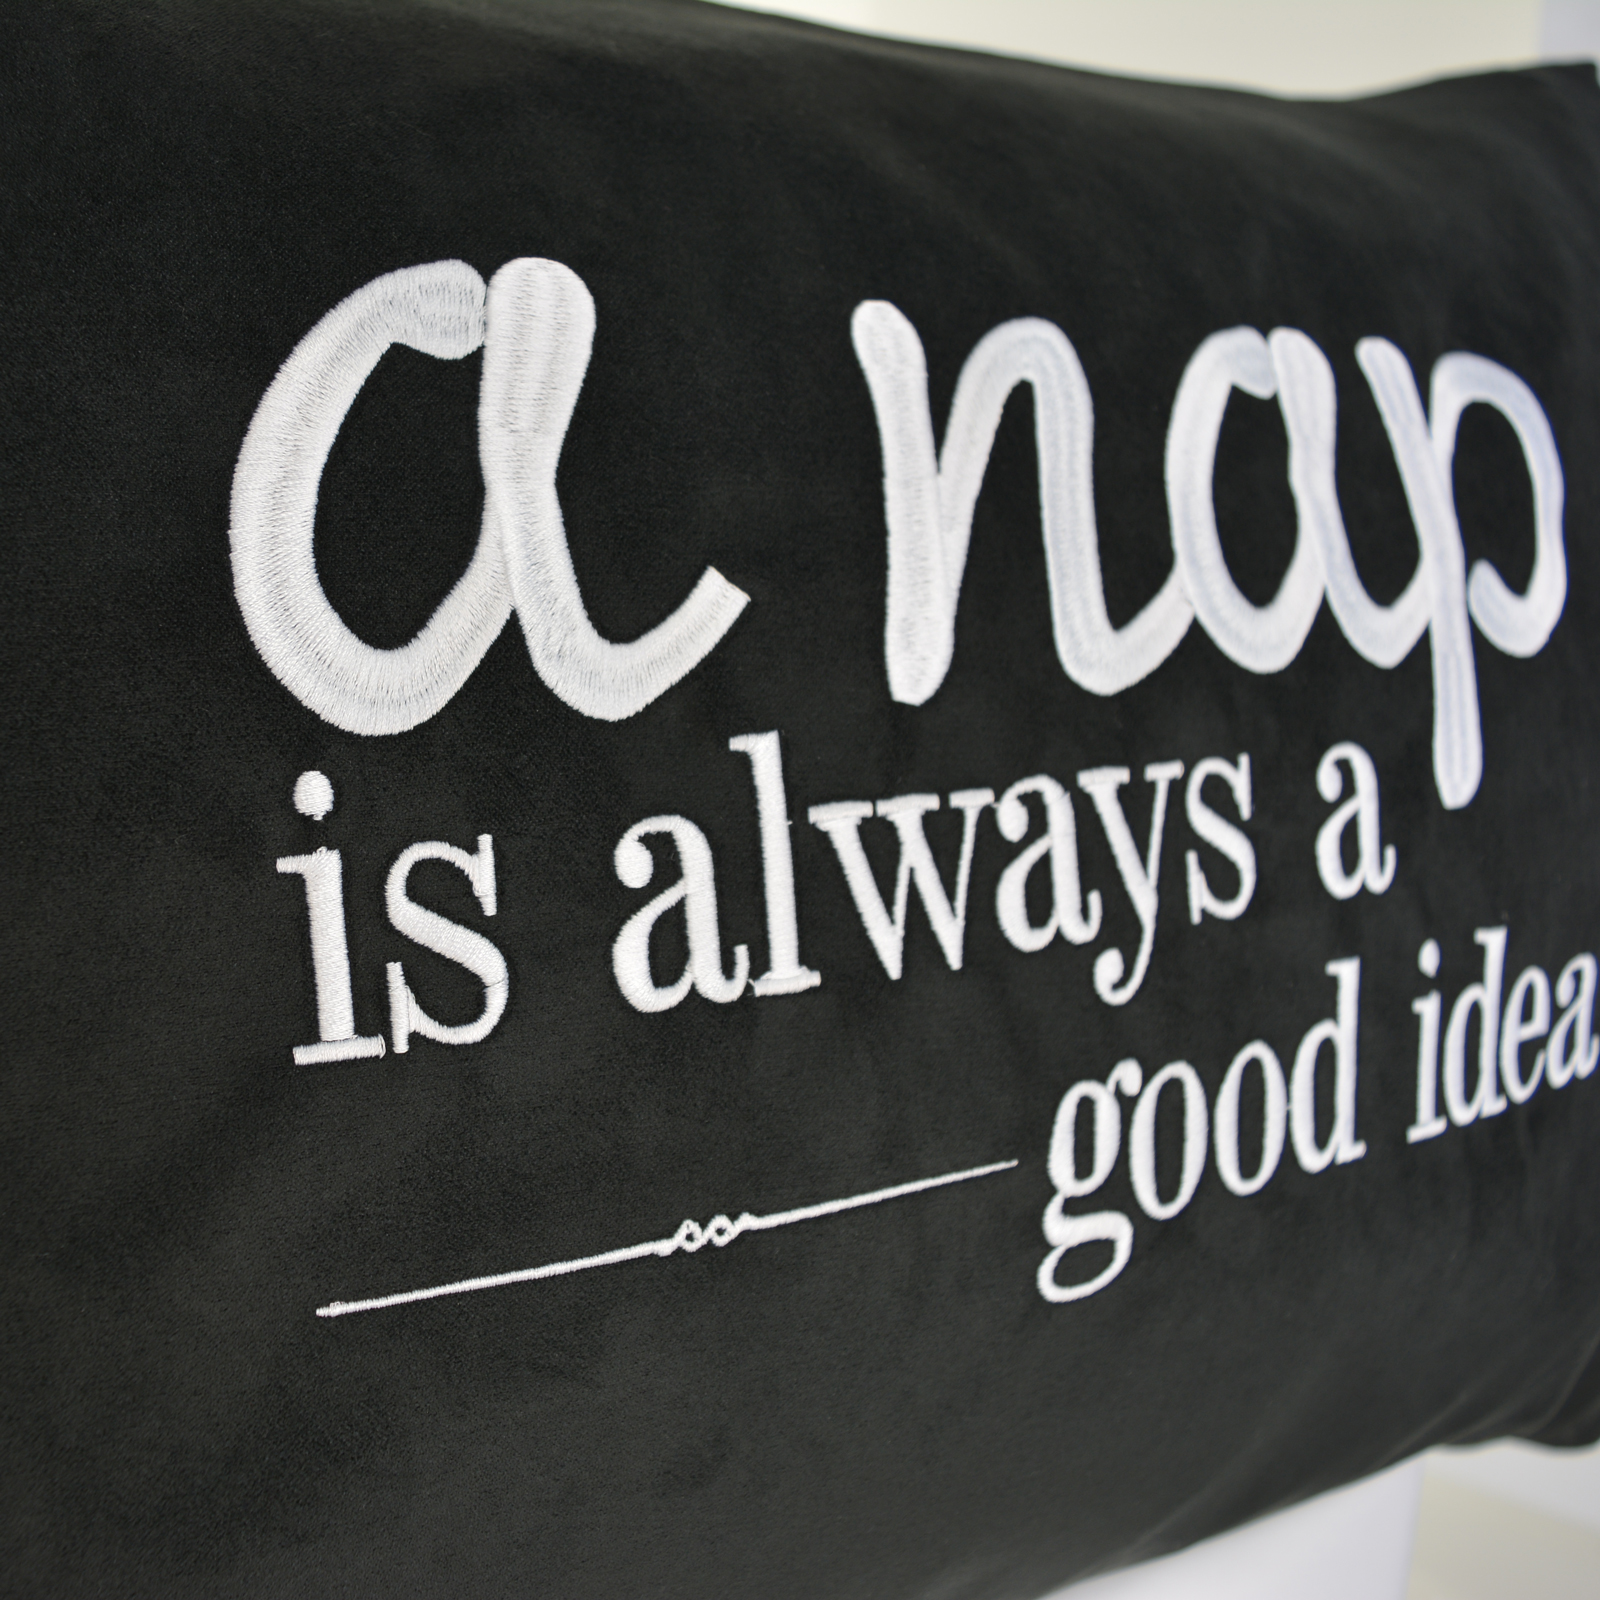 A nap is always a good idea- Kissen